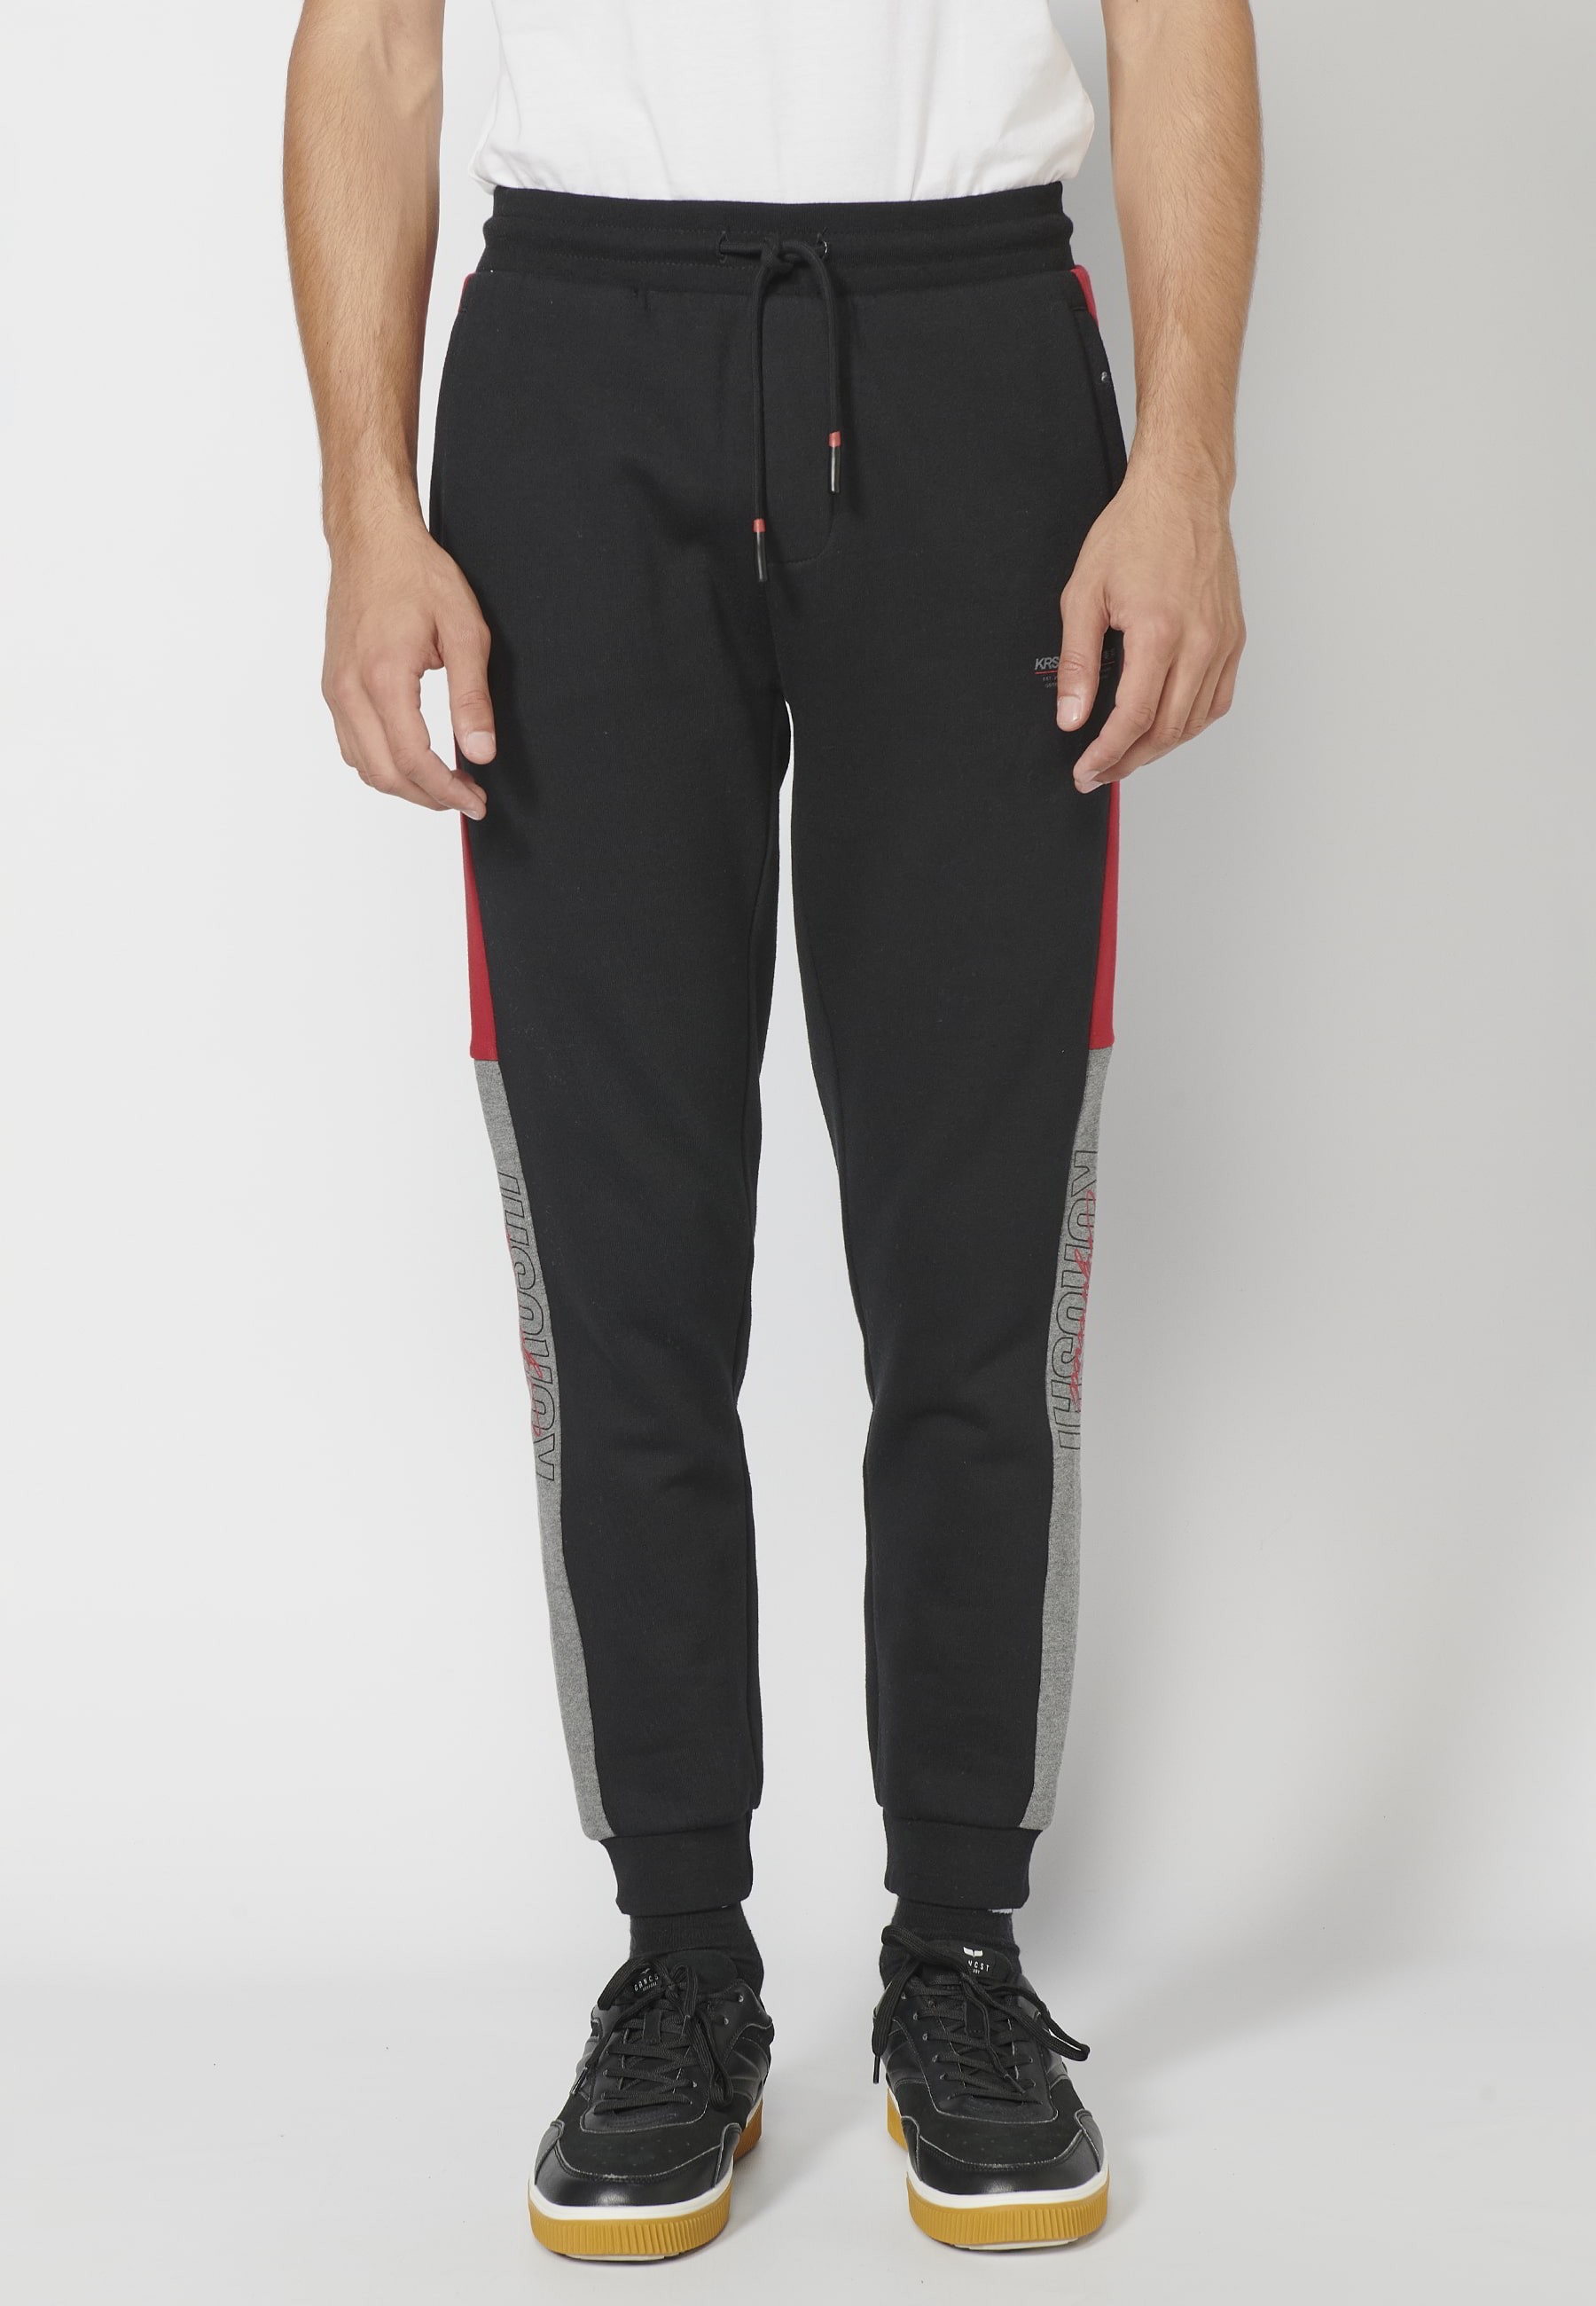 Pantalons llargs jogger amb cintura elàstica ajustable, detall lateral, color negre per a Home